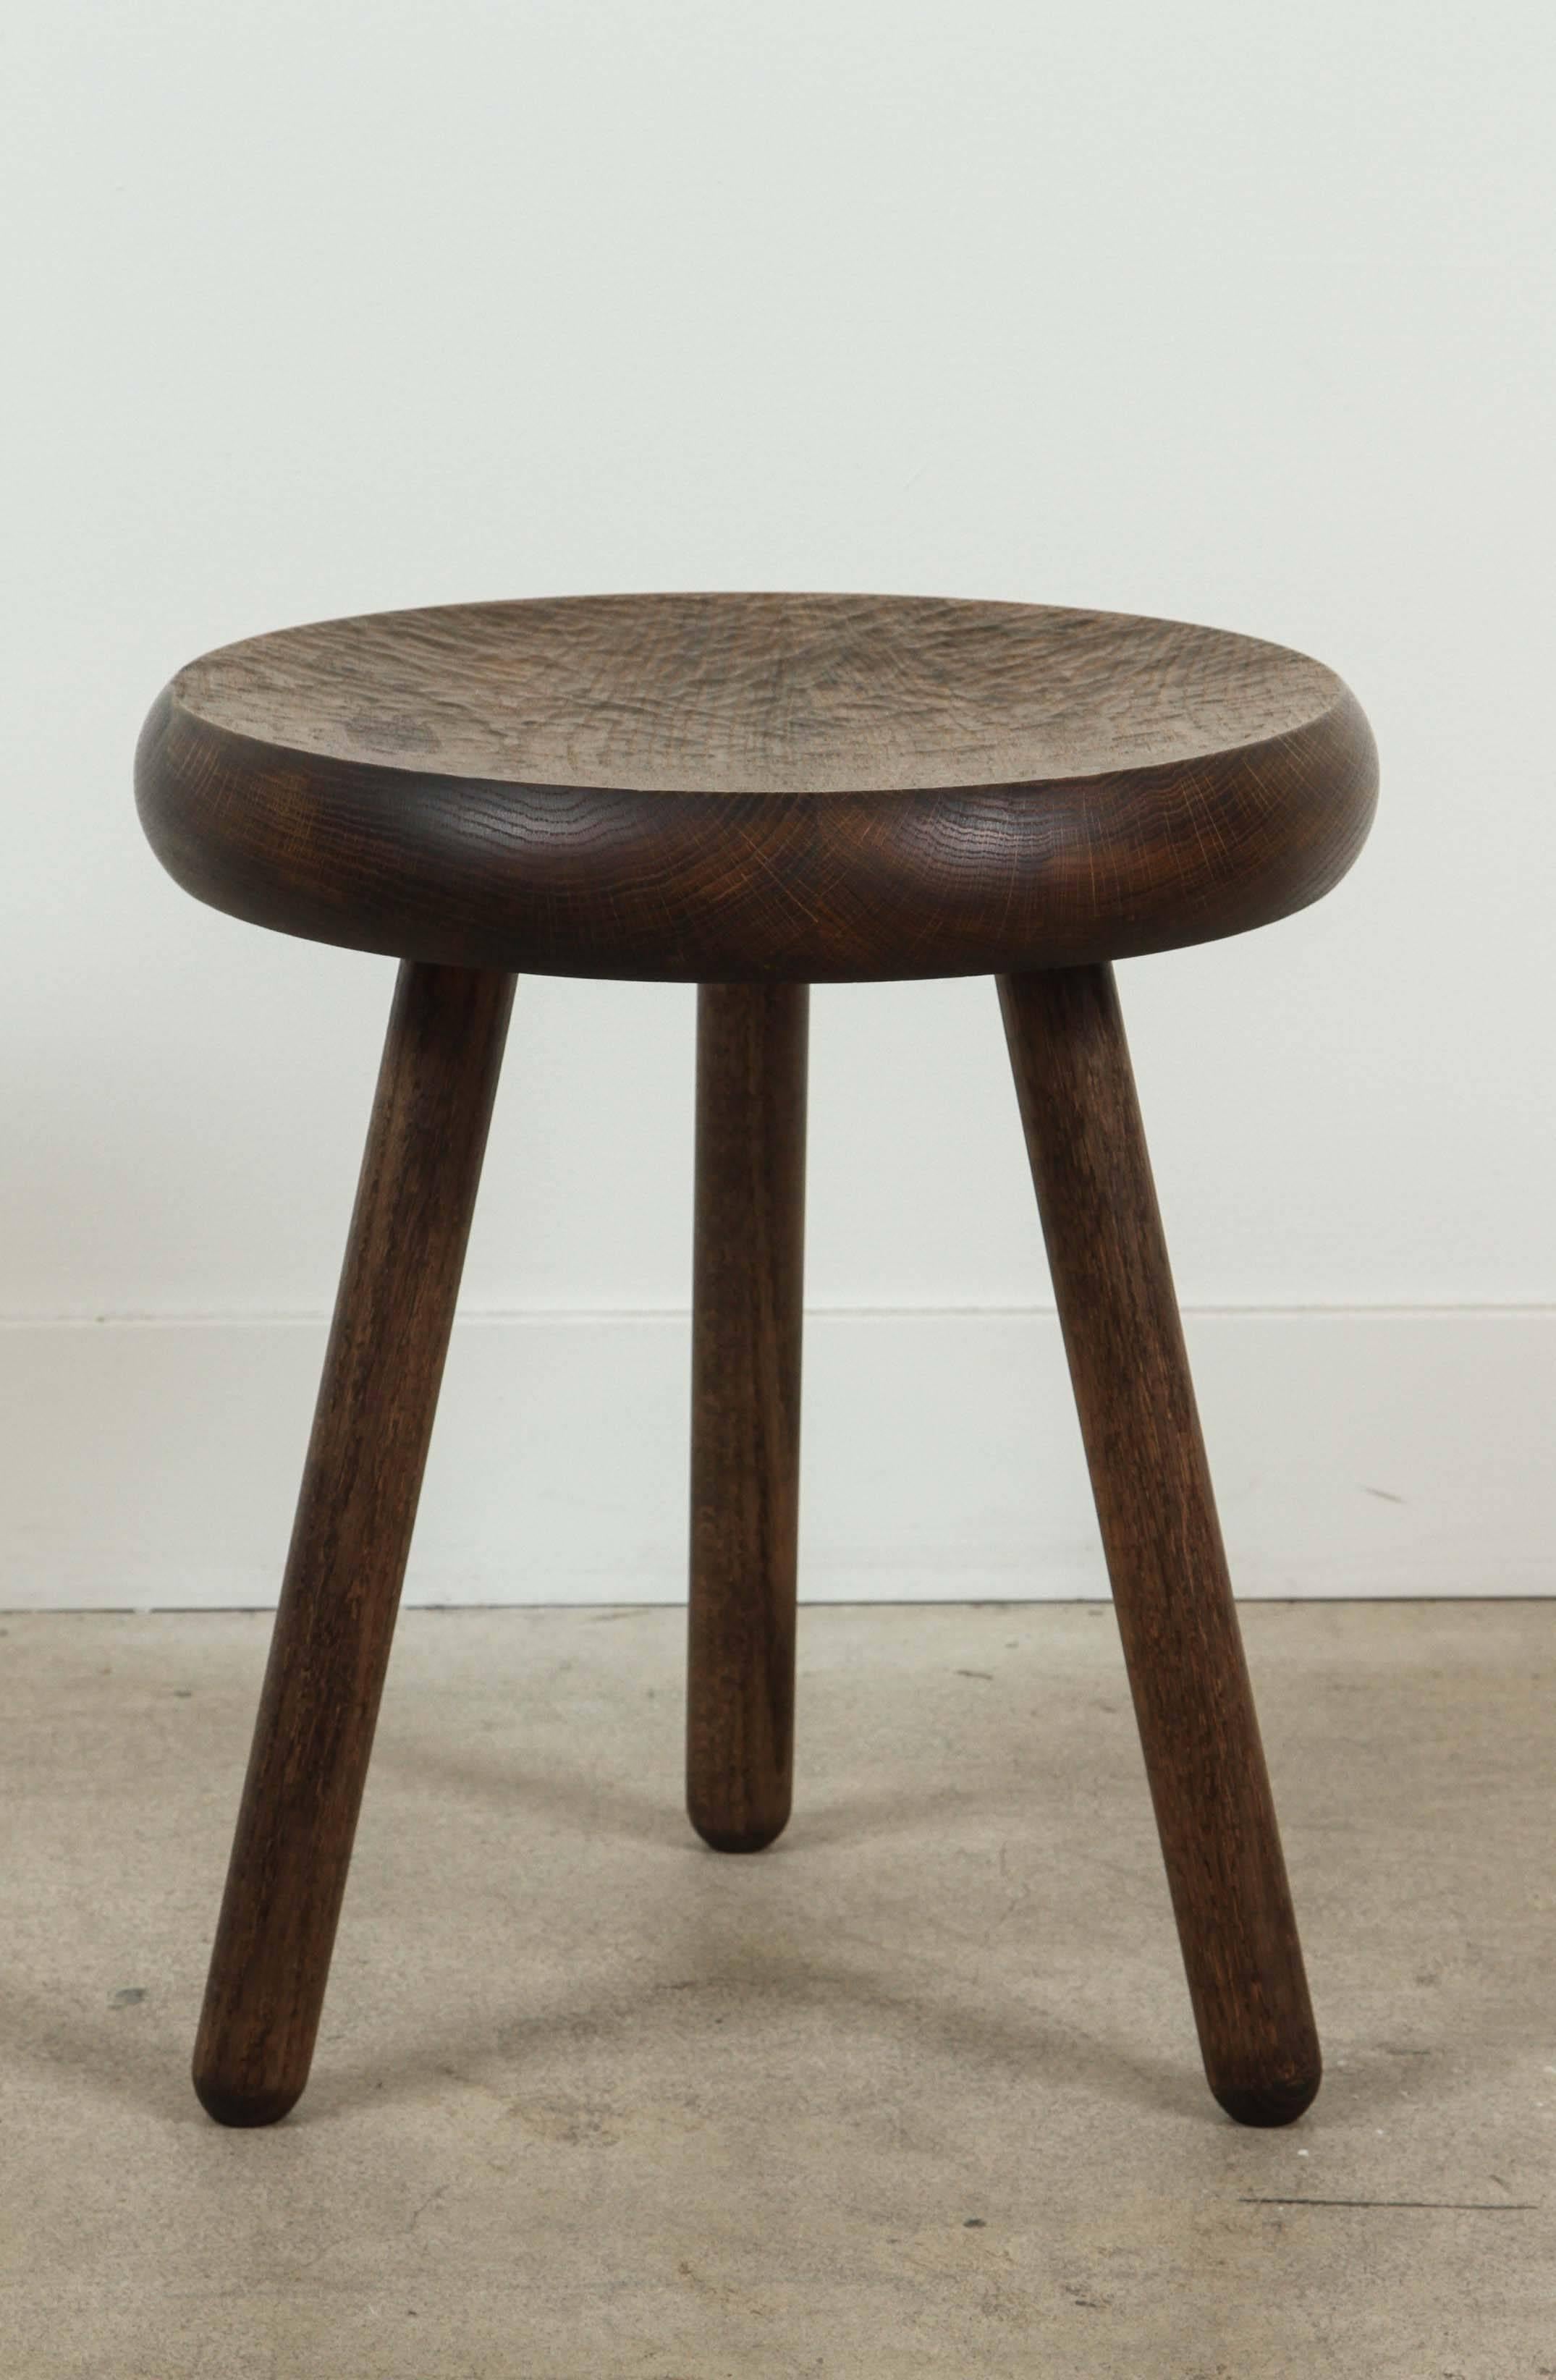 Dibbet stool by De JONG & Co. in Oxidized Oak